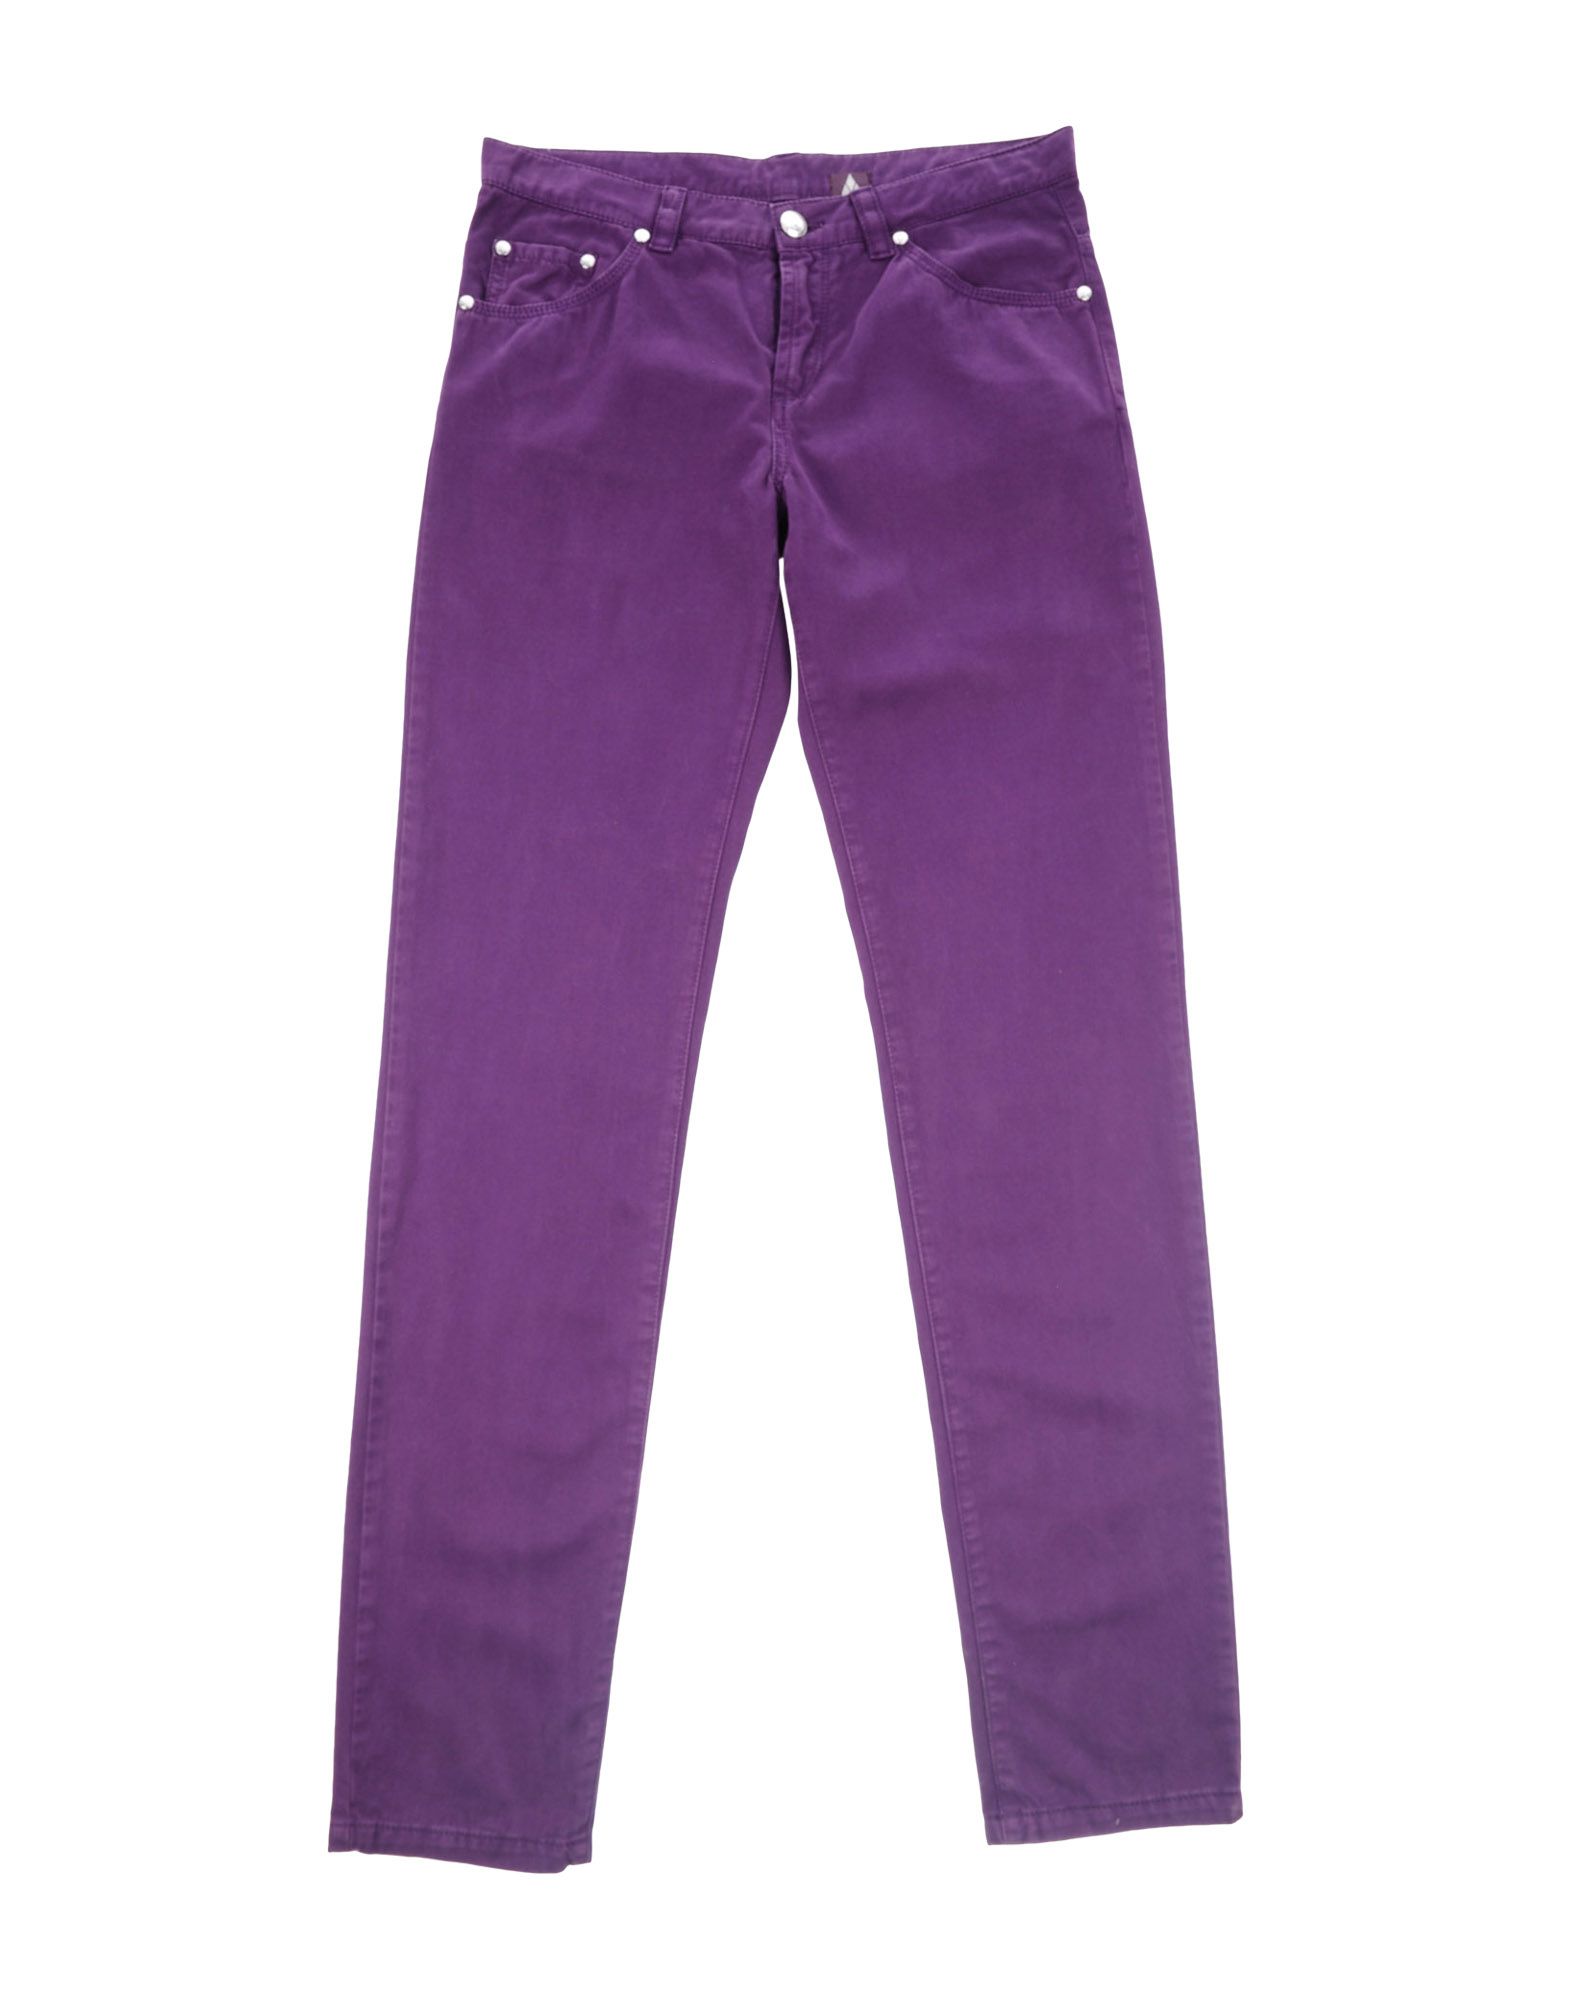 Ballantyne Casual Pants in Purple for Men - Lyst